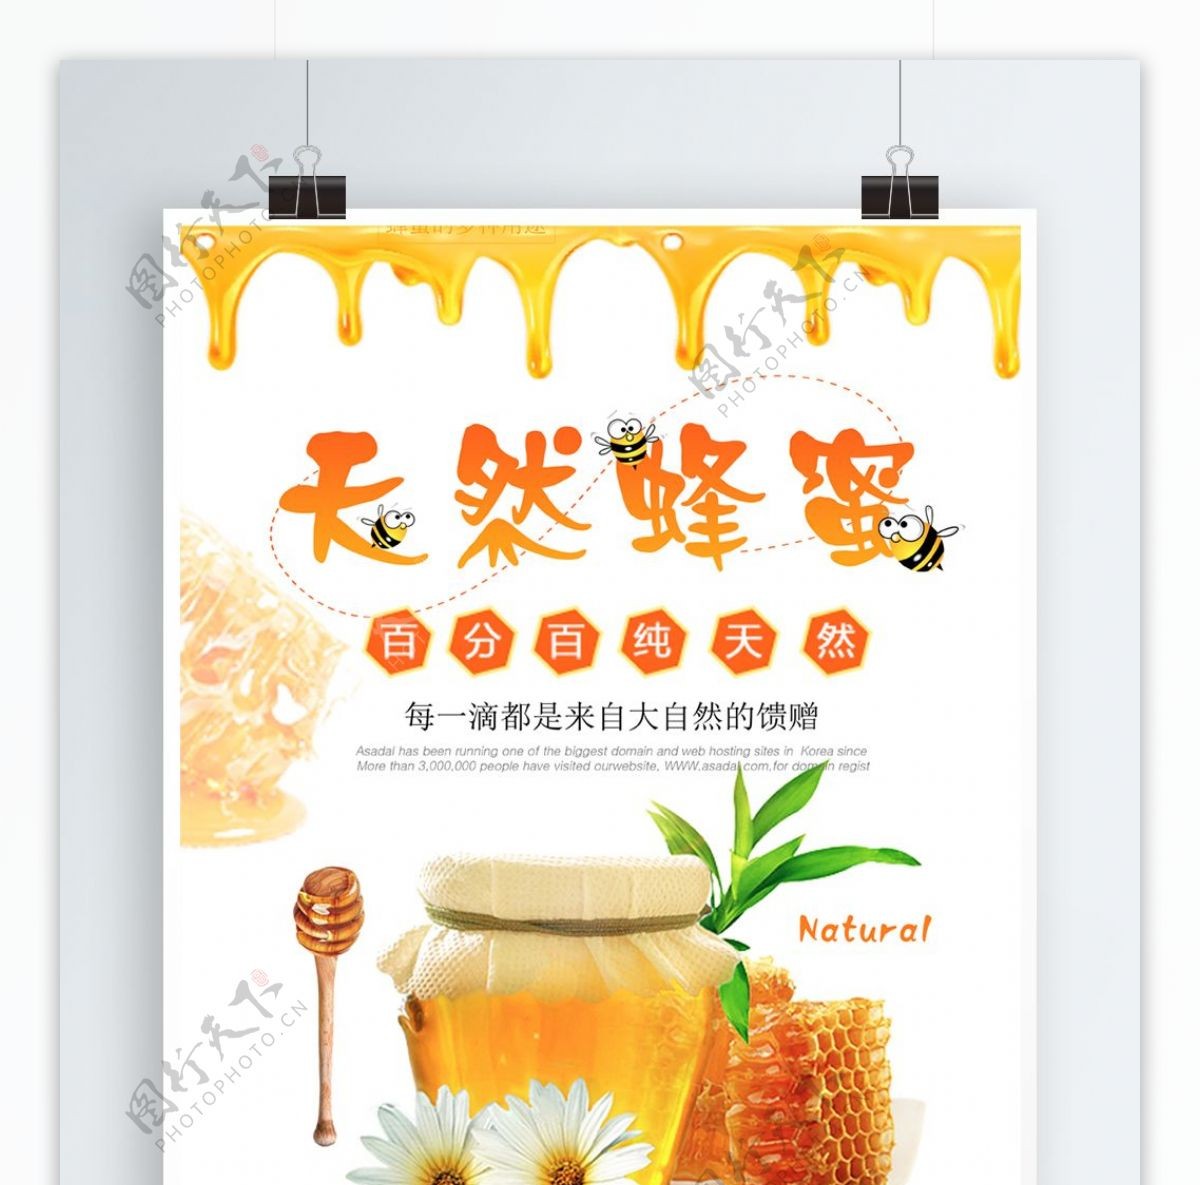 简约清新天然蜂蜜宣传海报设计